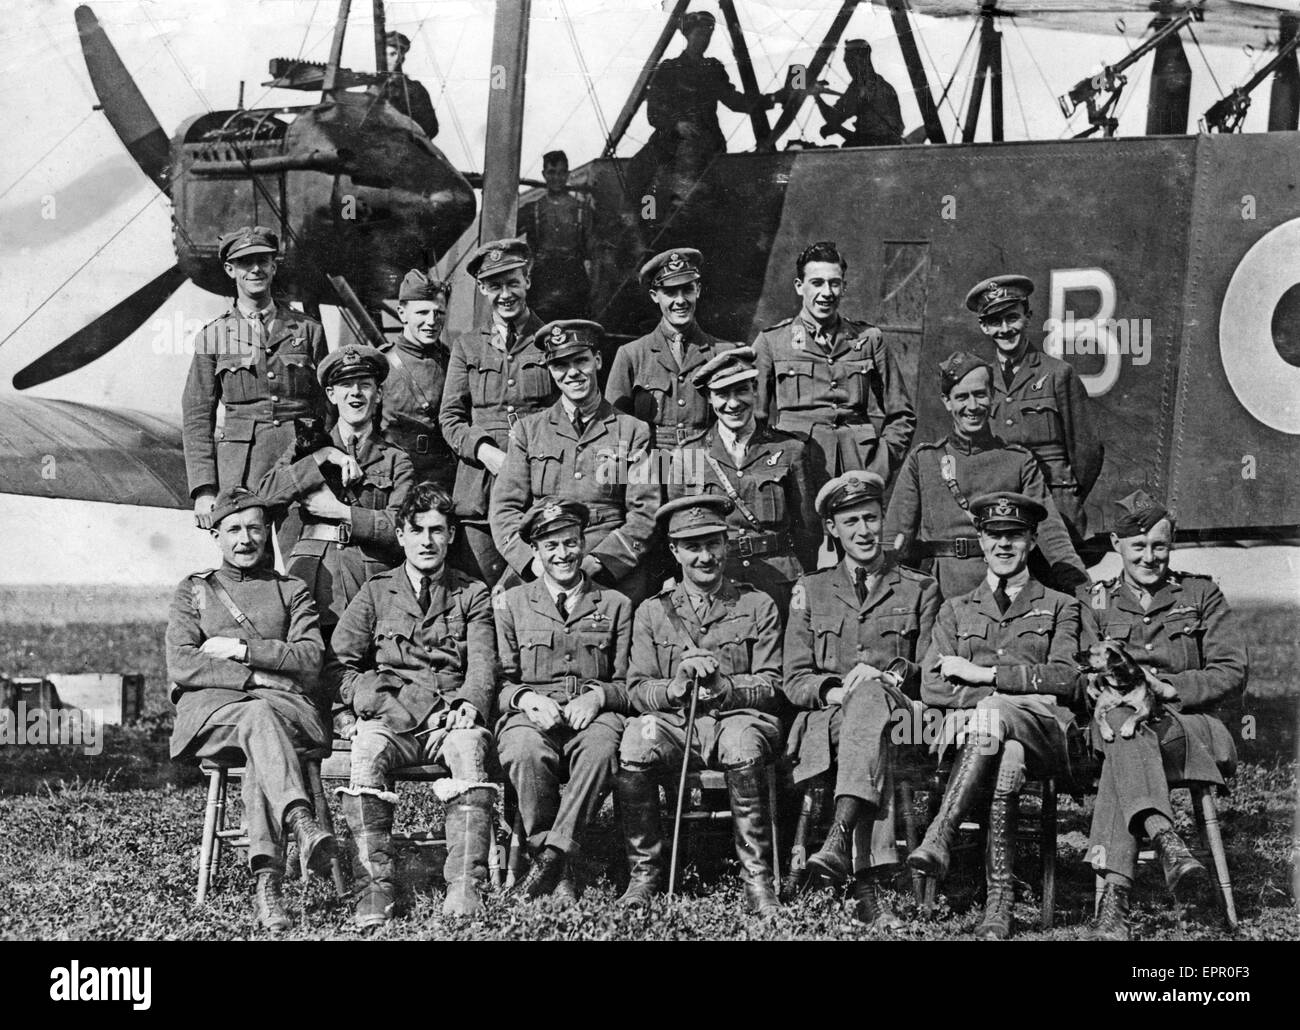 Mesa de 207escuadrón, una fuerza aérea independiente, en el Aeródromo de Ligescourt Crecy, Francia, el 29 de agosto de 1918. Detrás de ellos trabajos de mecánica en un HANDLEY PAGE O/400 bomber Foto de stock